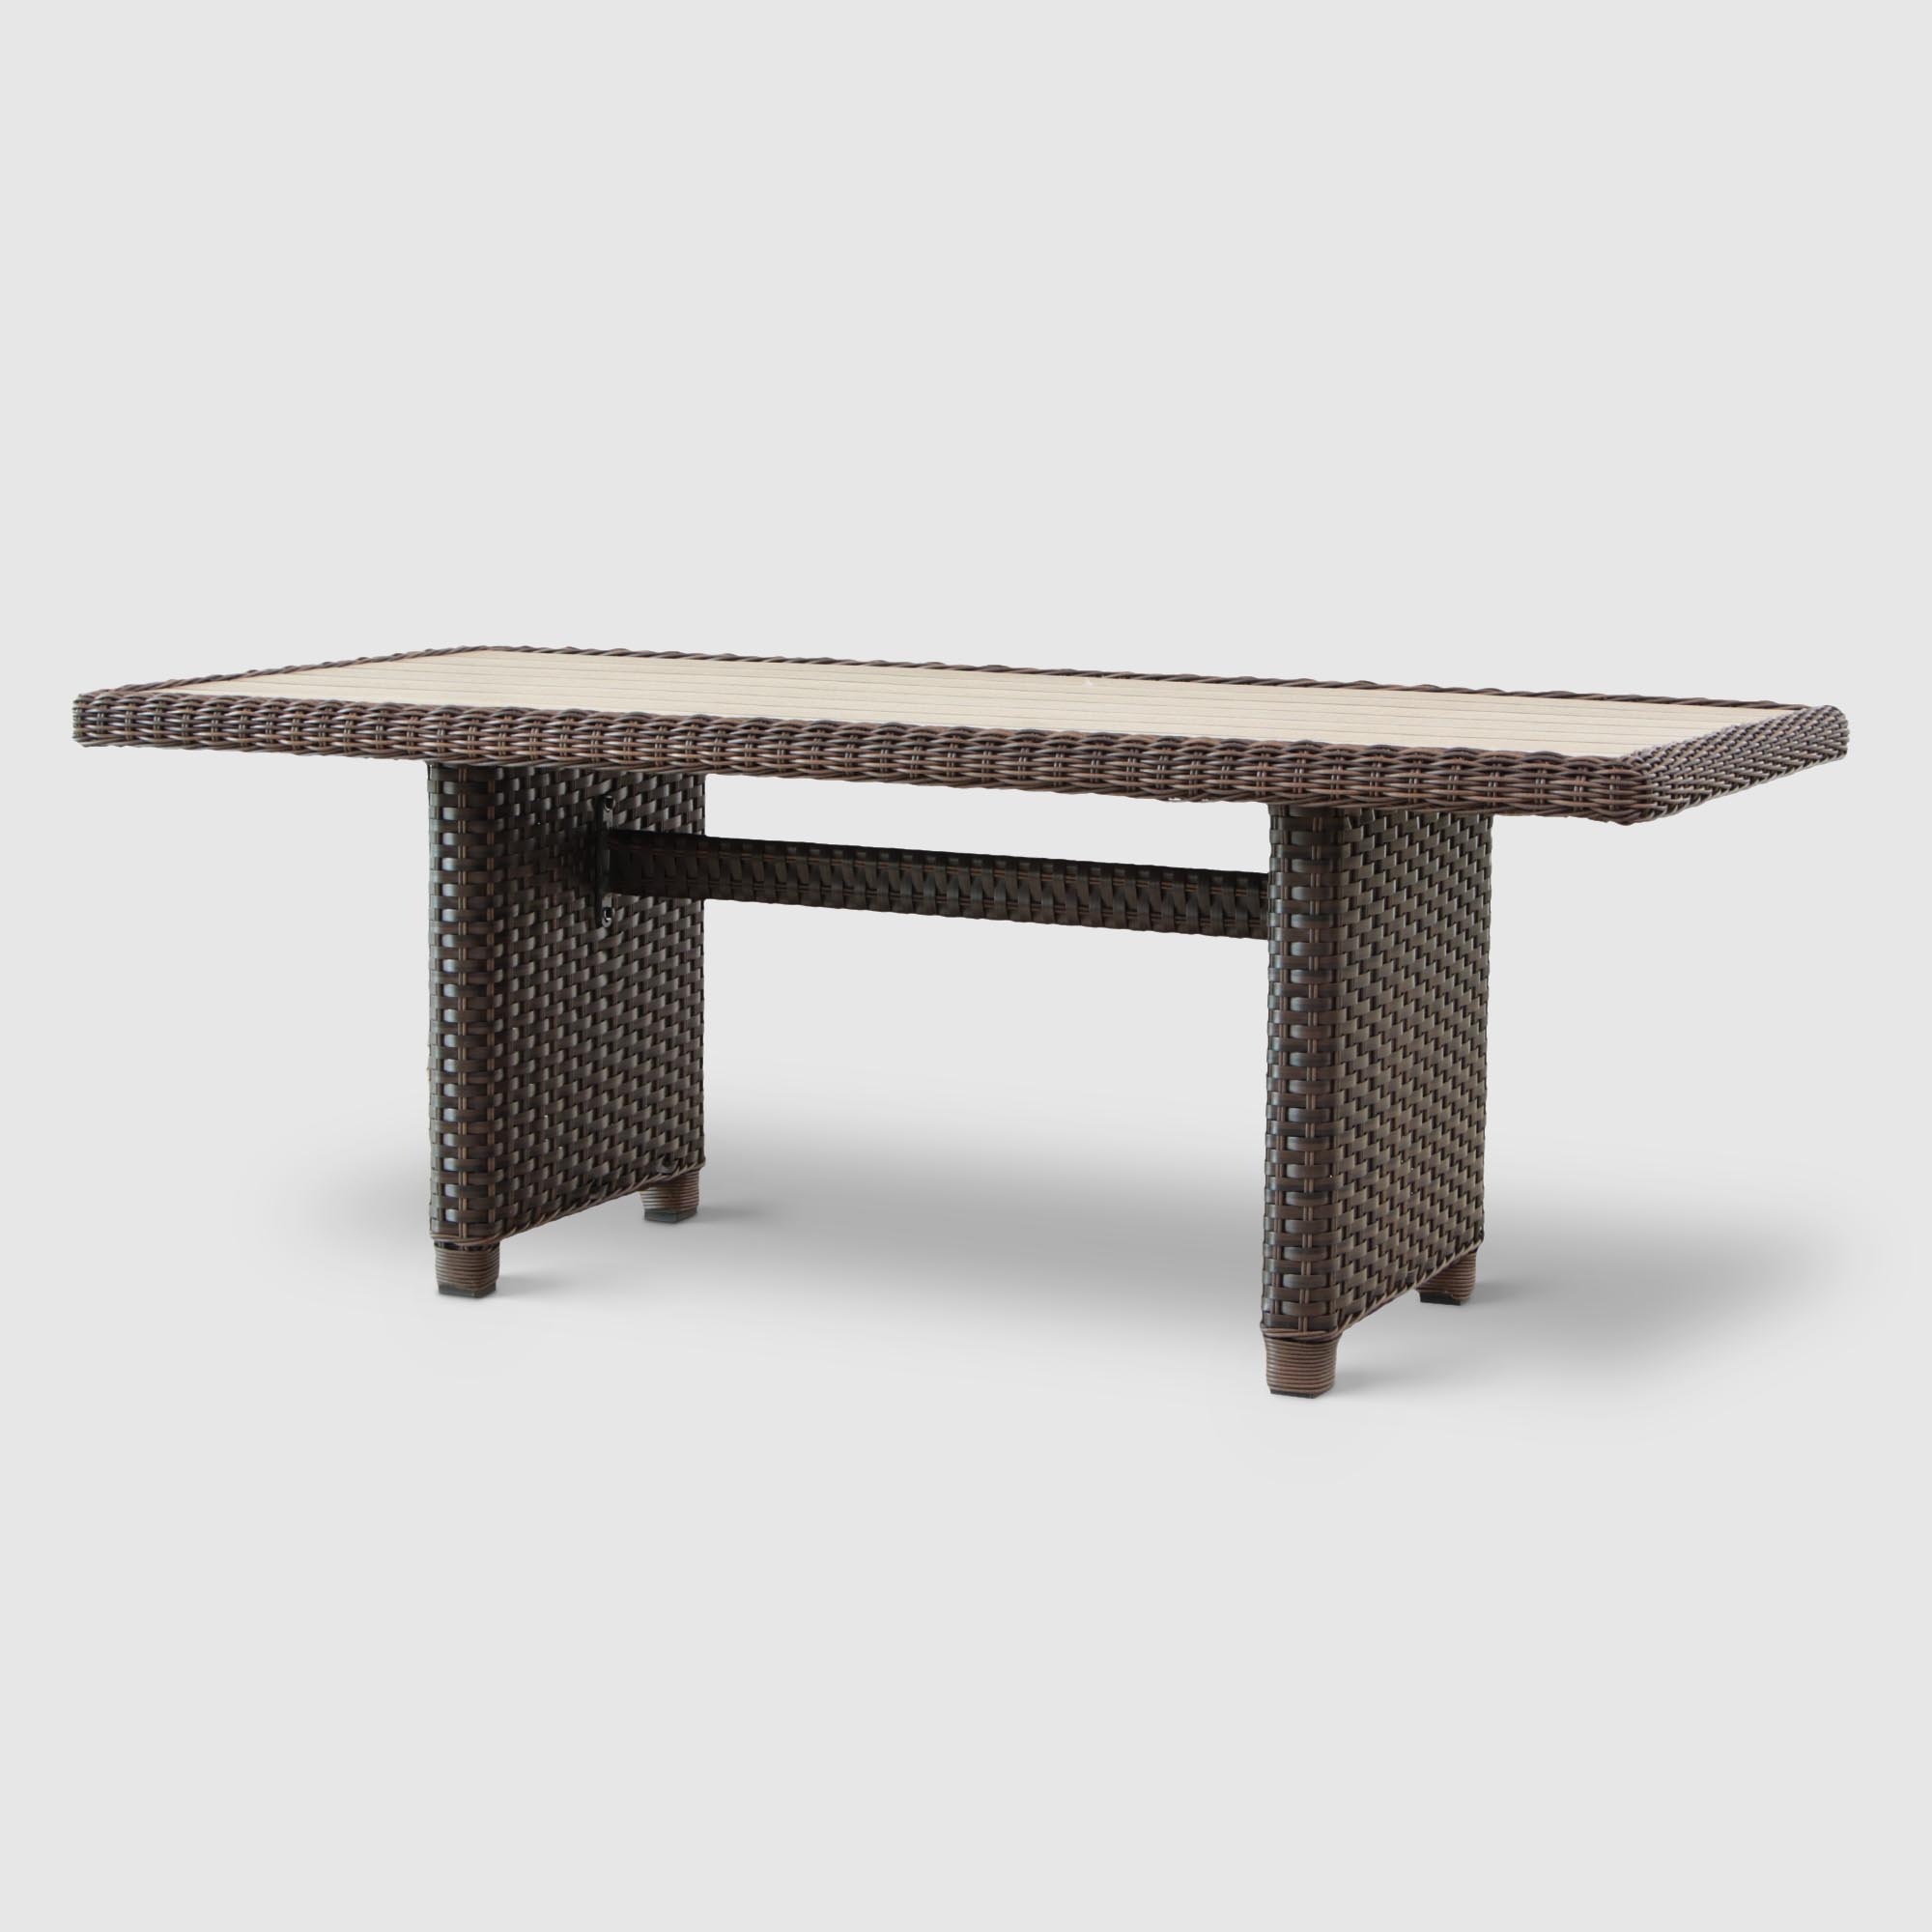 фото Комплект мебели yuhang коричневый с серым 6 предметов